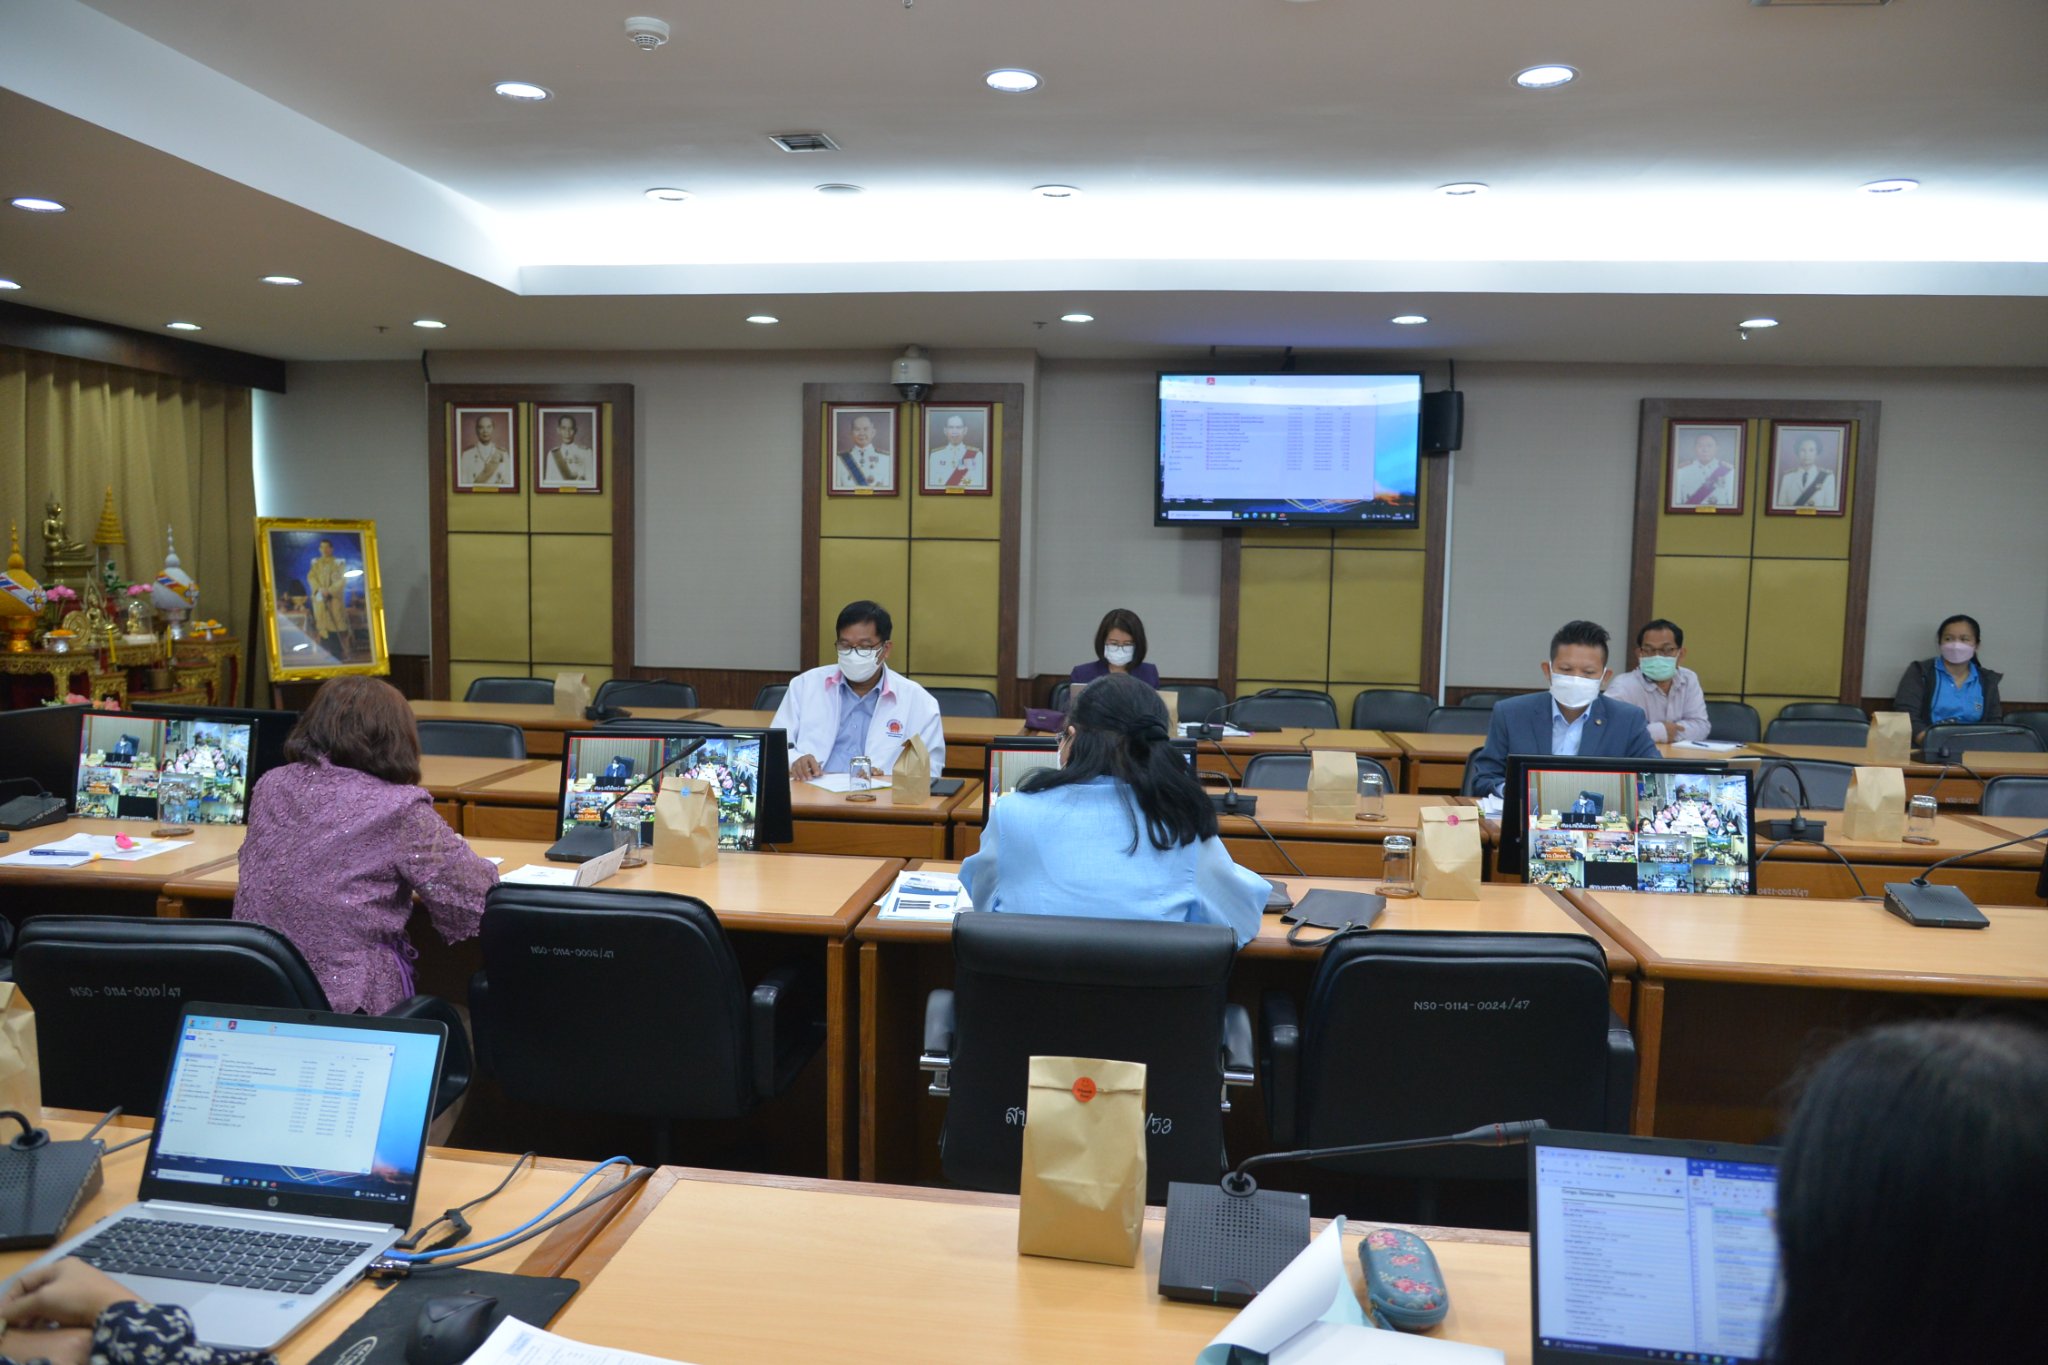 การประชุมแผนการดำเนินงานระหว่างสำนักงานสถิติแห่งชาติกับสำนักงานสถิติจังหวัด ครั้งที่ 4/2565 ผ่านระบบ Video Conference และระบบ Yealink